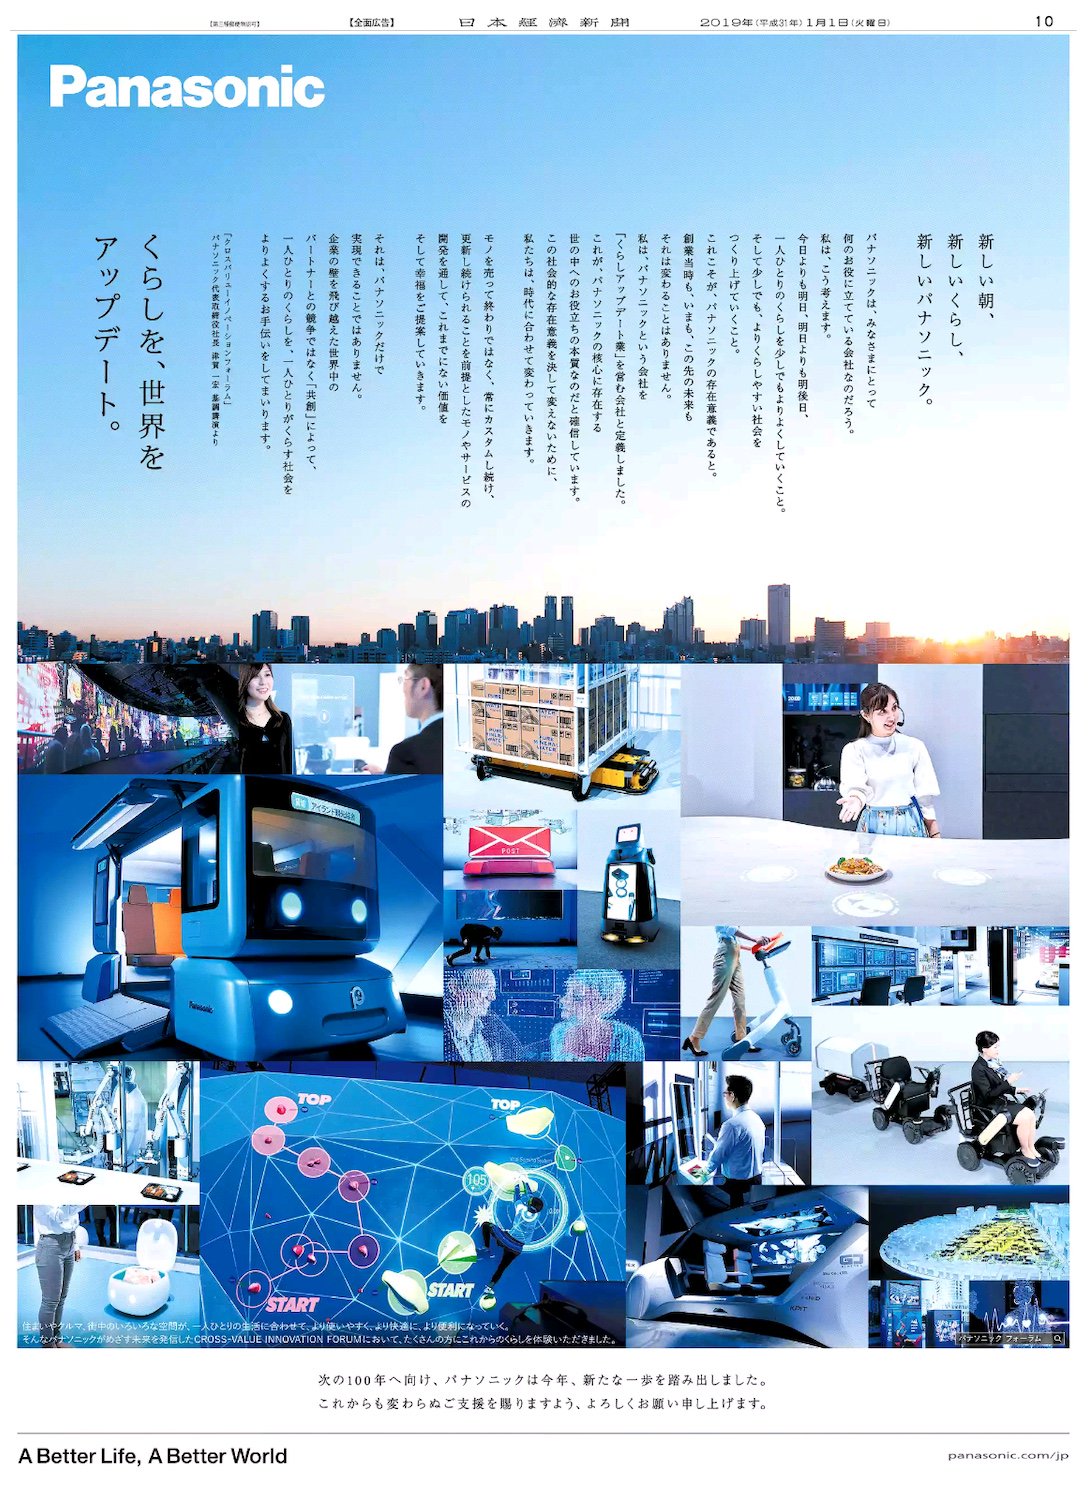 Nikkei Brand Voice 1 1掲載のパナソニックの広告は同社津賀社長のスピーチをボディコピーに取り入れています 昨年創業100周年を迎えた同社の 次の100年に向けた くらしアップデート業 の宣言です 日経 新聞広告 パナソニック